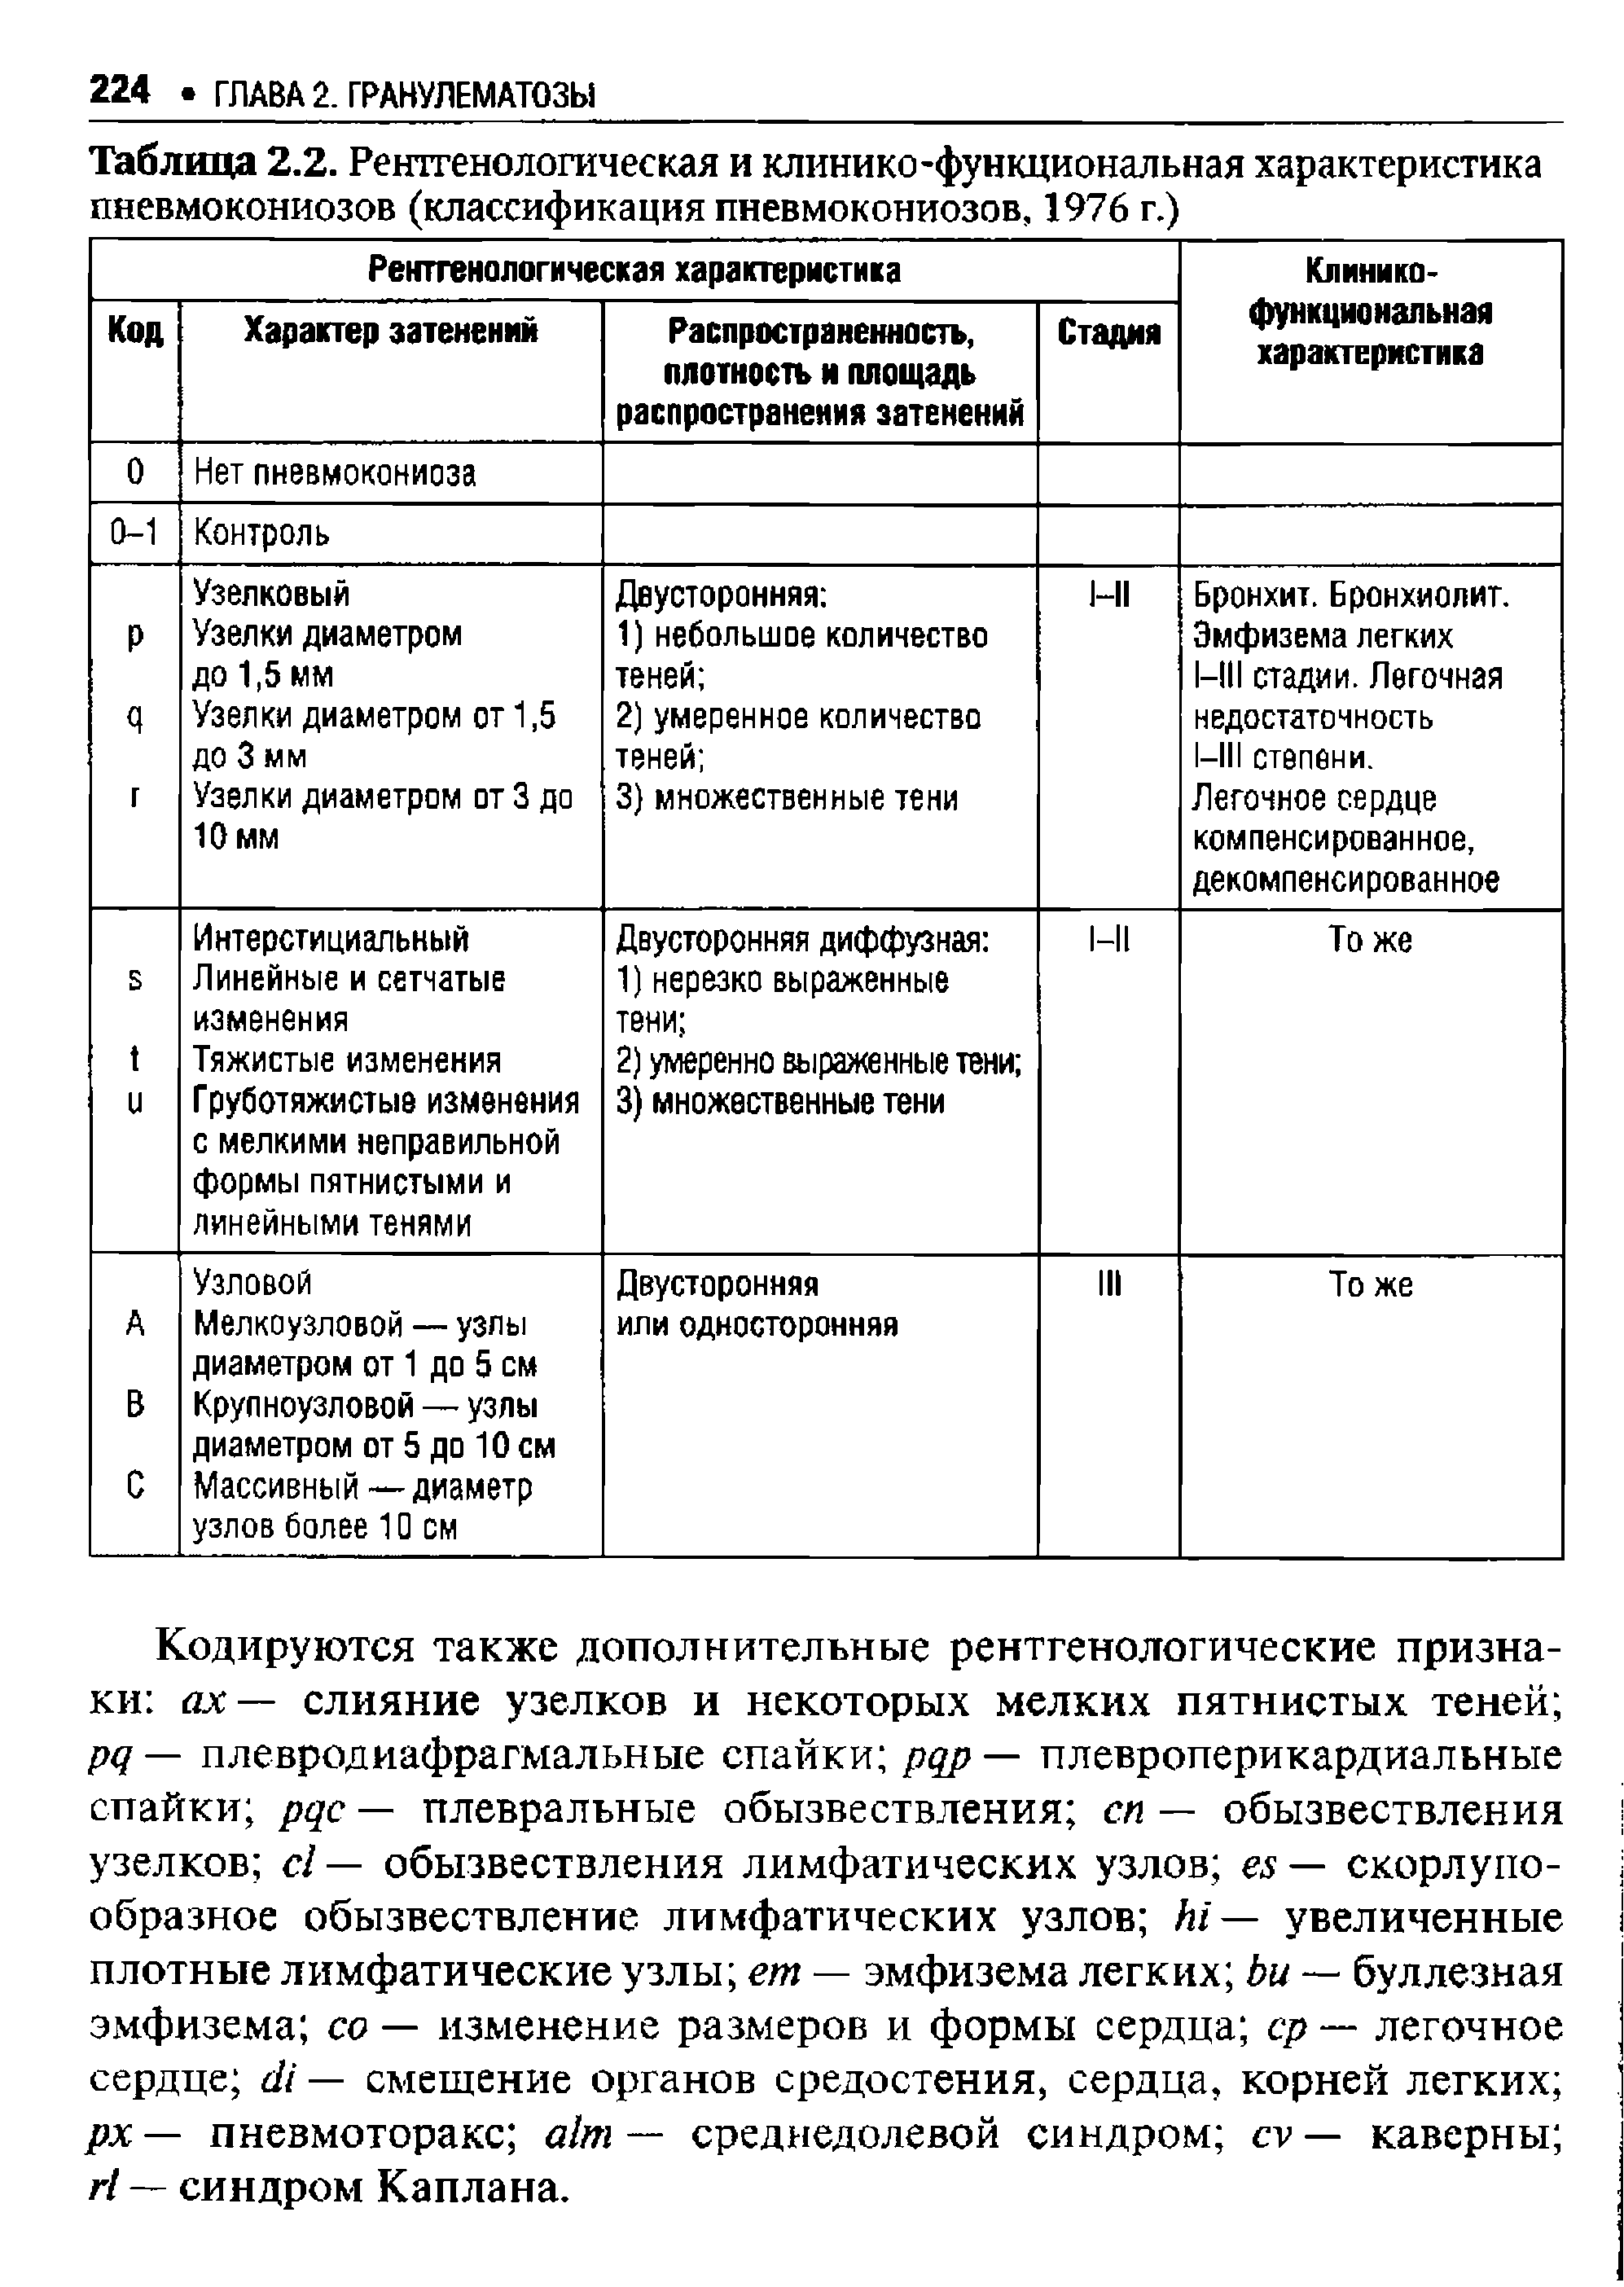 Таблица 2.2. Рентгенологическая и клинико-функциональная характеристика пневмокониозов (классификация пневмокониозов, 1976 г.)...